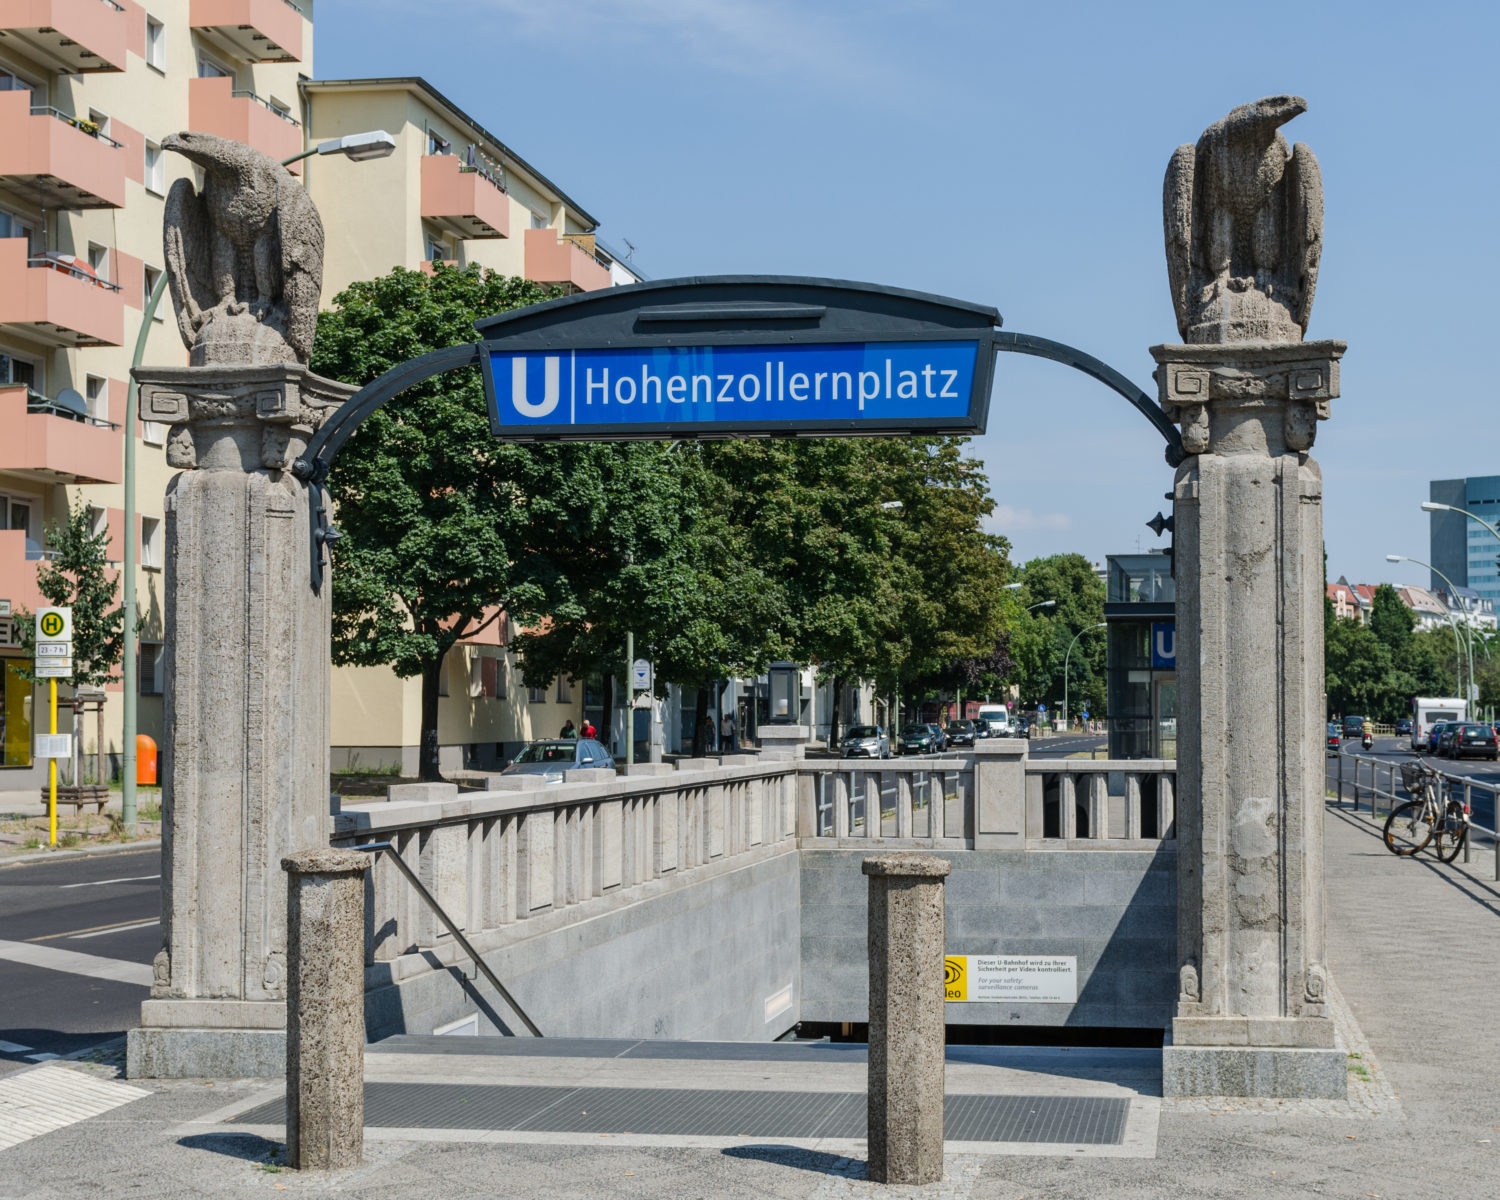 U3 Denkmalgeschützter Eingang des U-Bahnhofs Hohenzollernplatz: Die Steinadler stammen vom deutschen Bildhauer Robert Korn. 